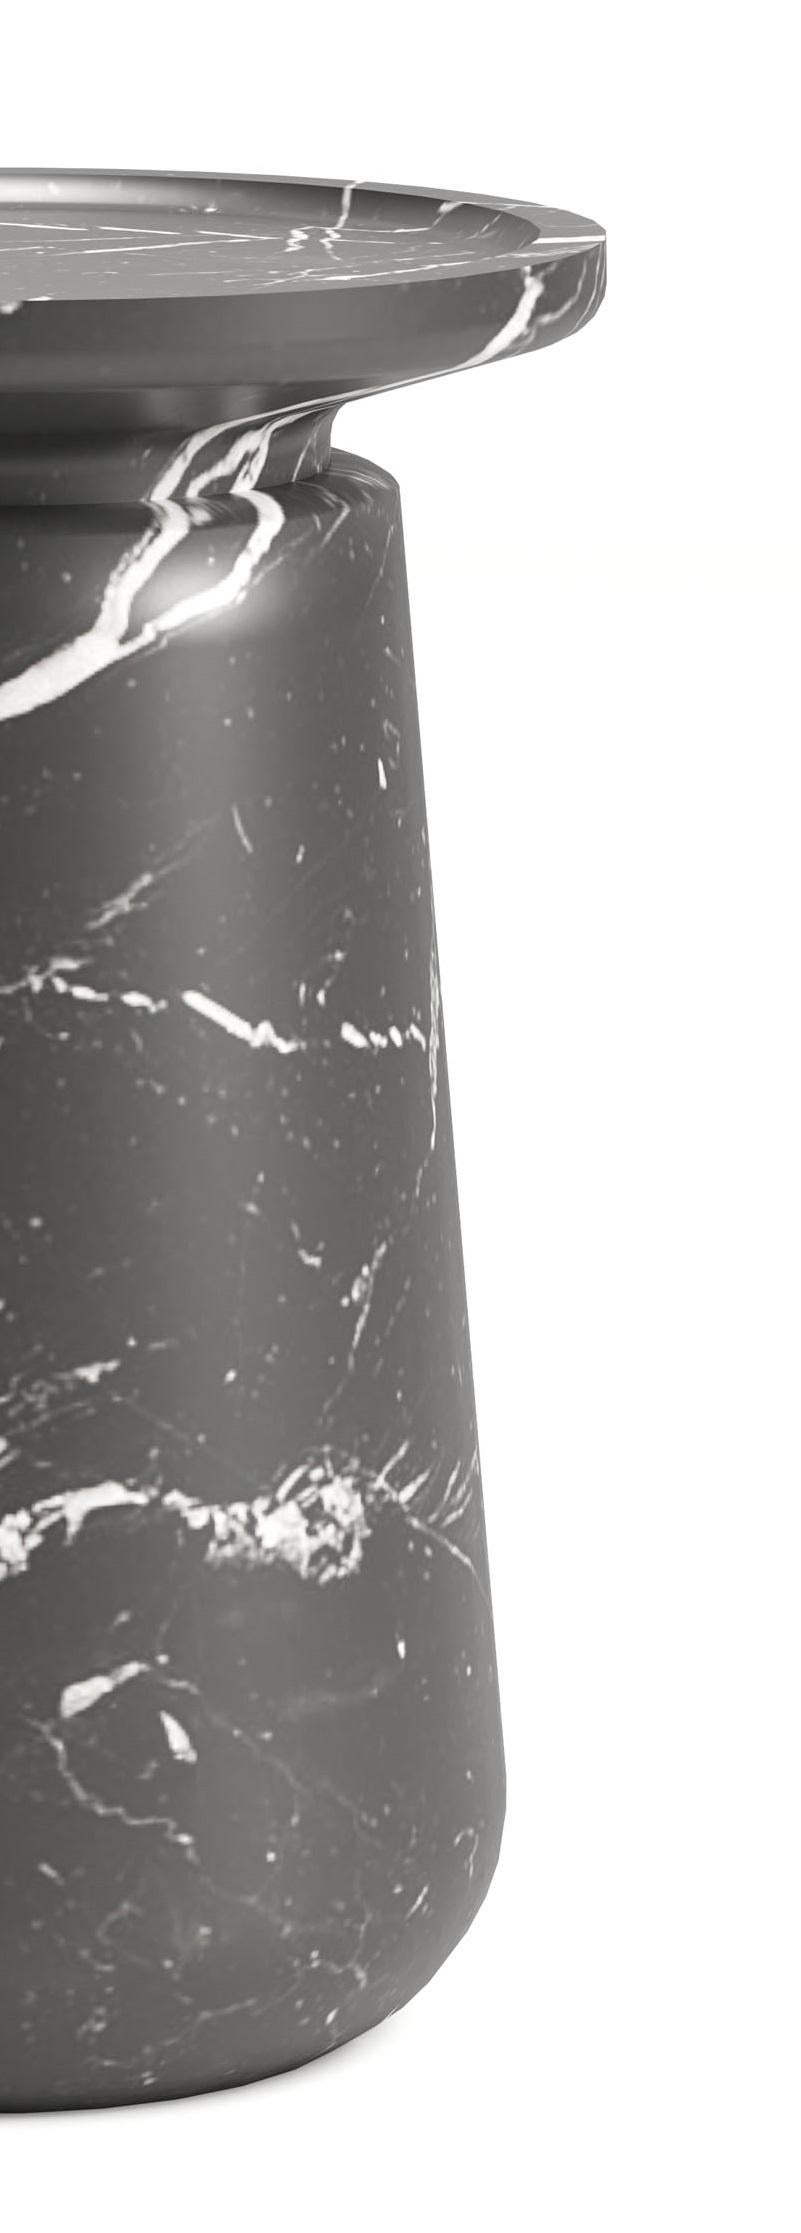 Altana Kleiner Nero Marquinia Beistelltisch von Ivan Colominas
Abmessungen: Ø 38 x H 54 cm
MATERIALIEN: Nero Marquinia-Marmor.

Erhältlich in verschiedenen Marmorvarianten und in unterschiedlichen Größen. Bitte kontaktieren Sie uns.

Wie die